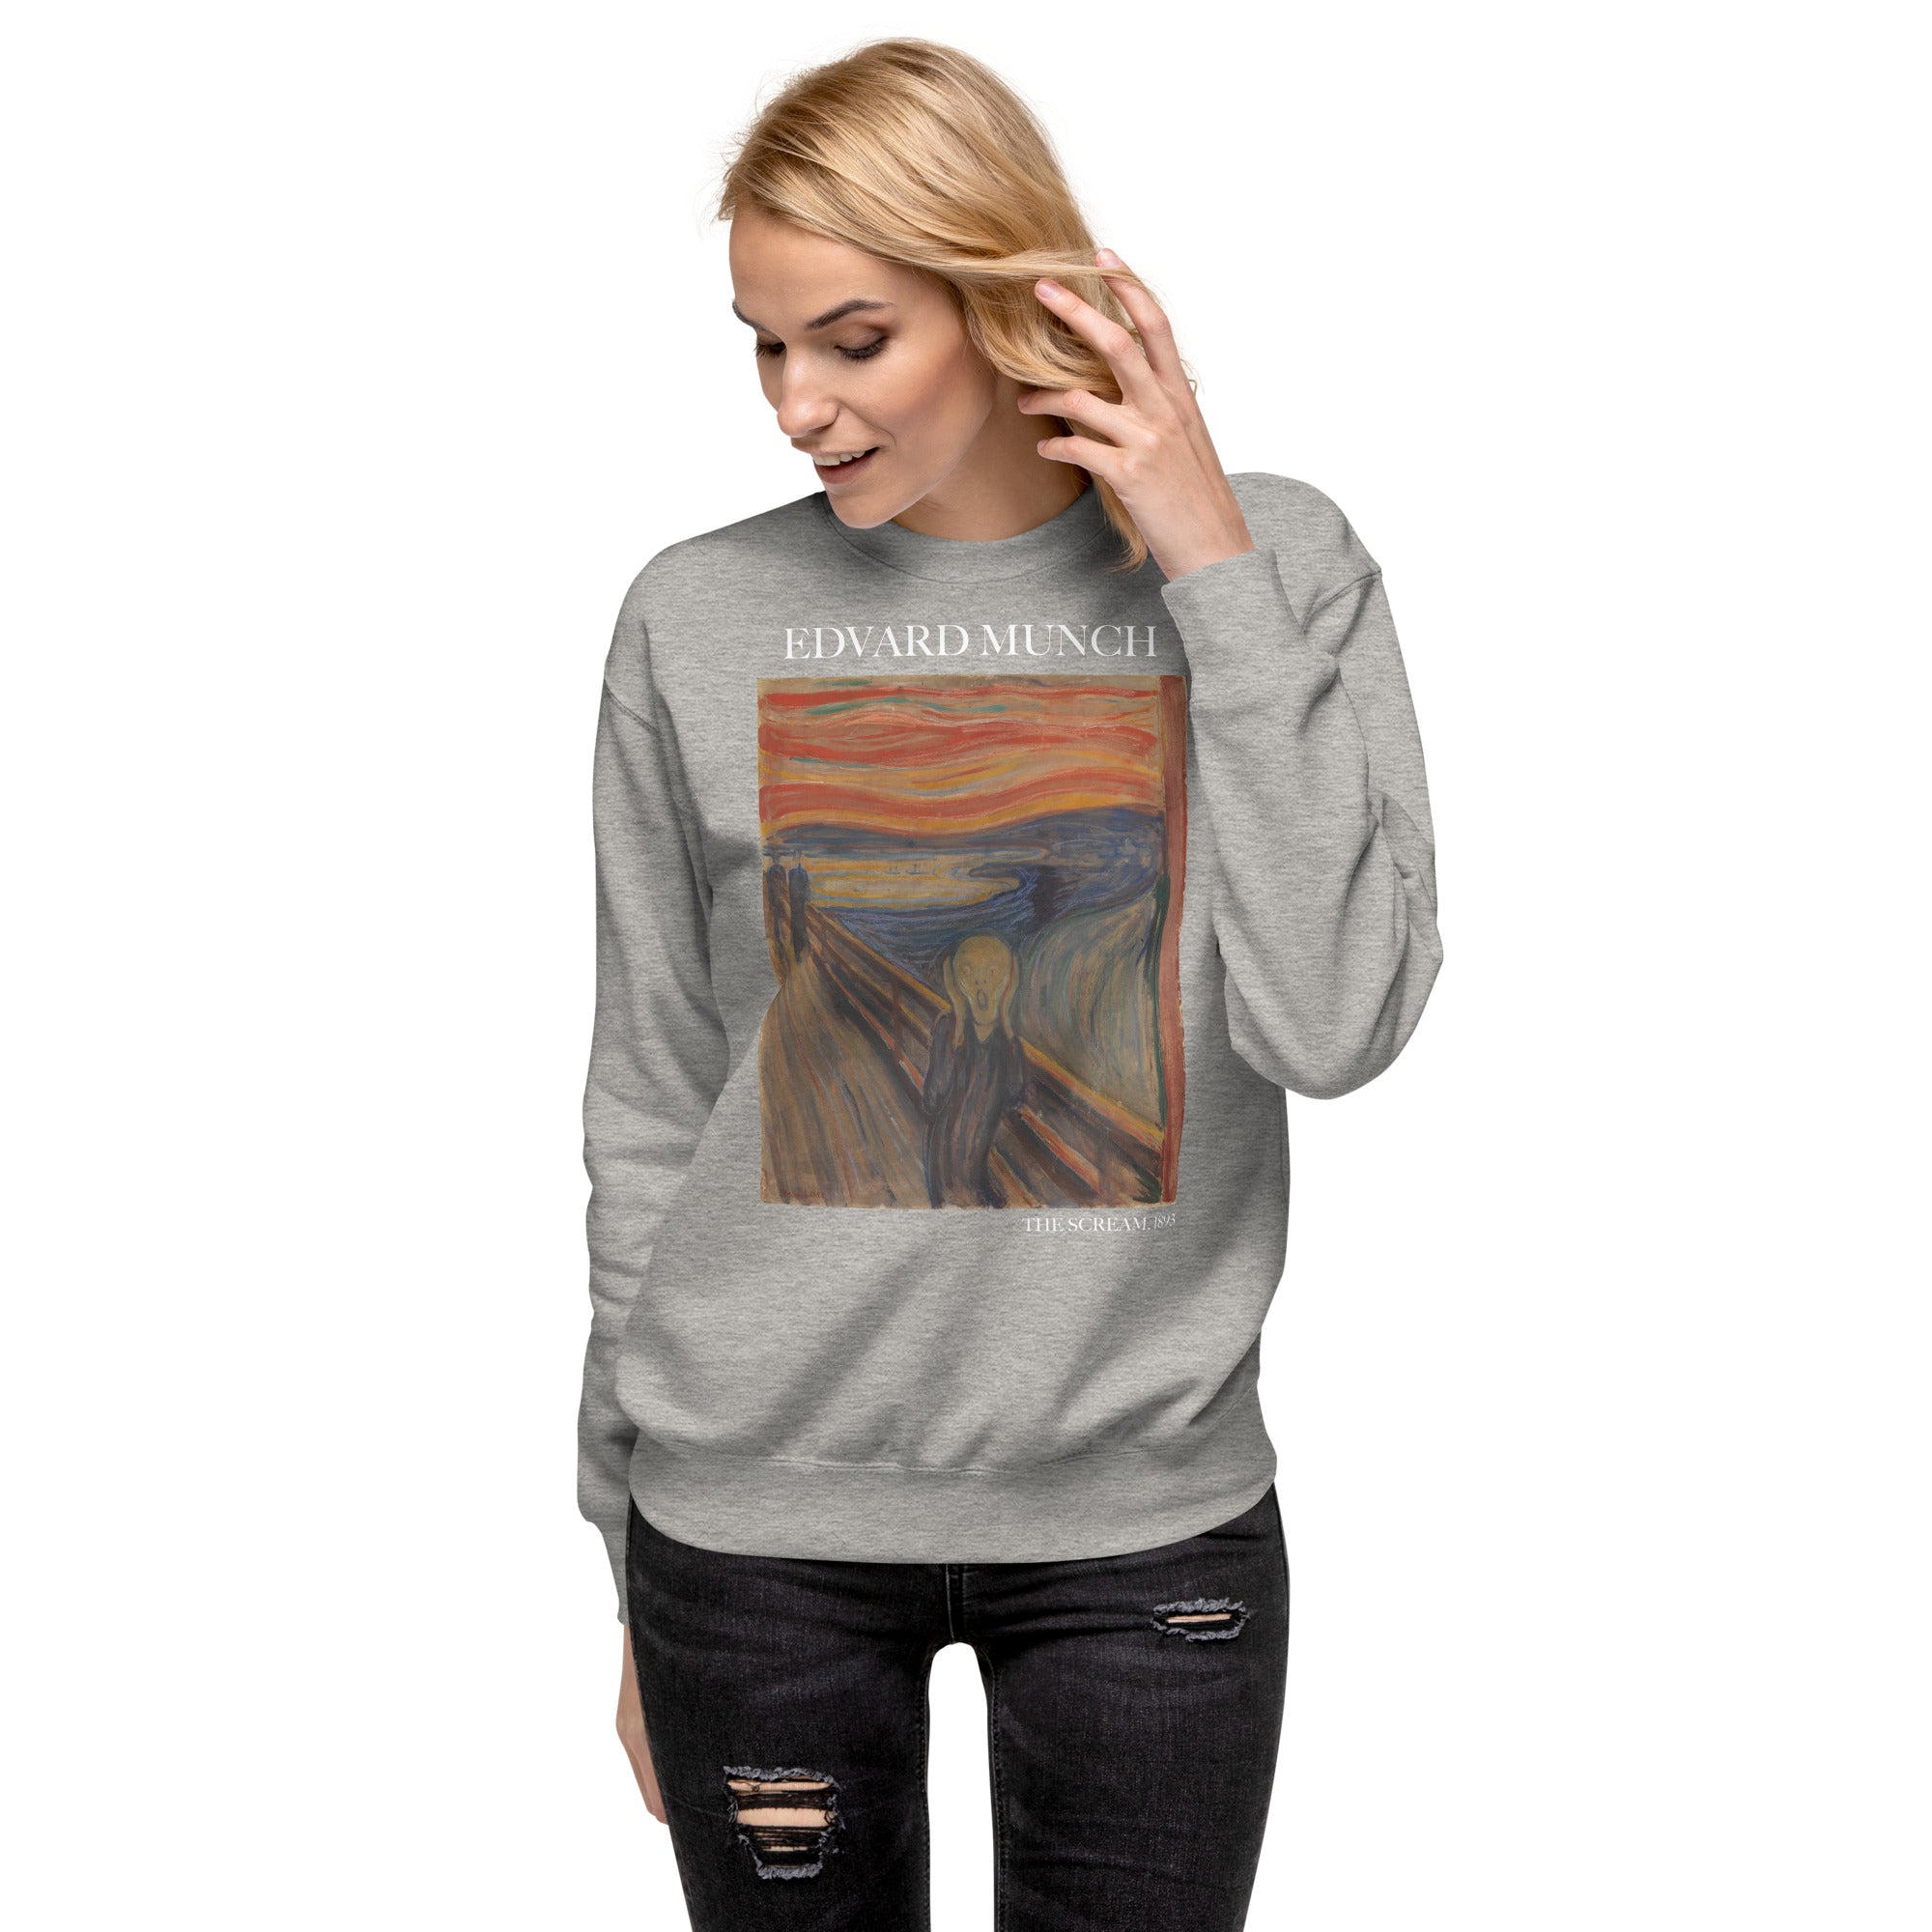 Edvard Munch 'The Scream' Famous Painting Sweatshirt | Unisex Premium Sweatshirt